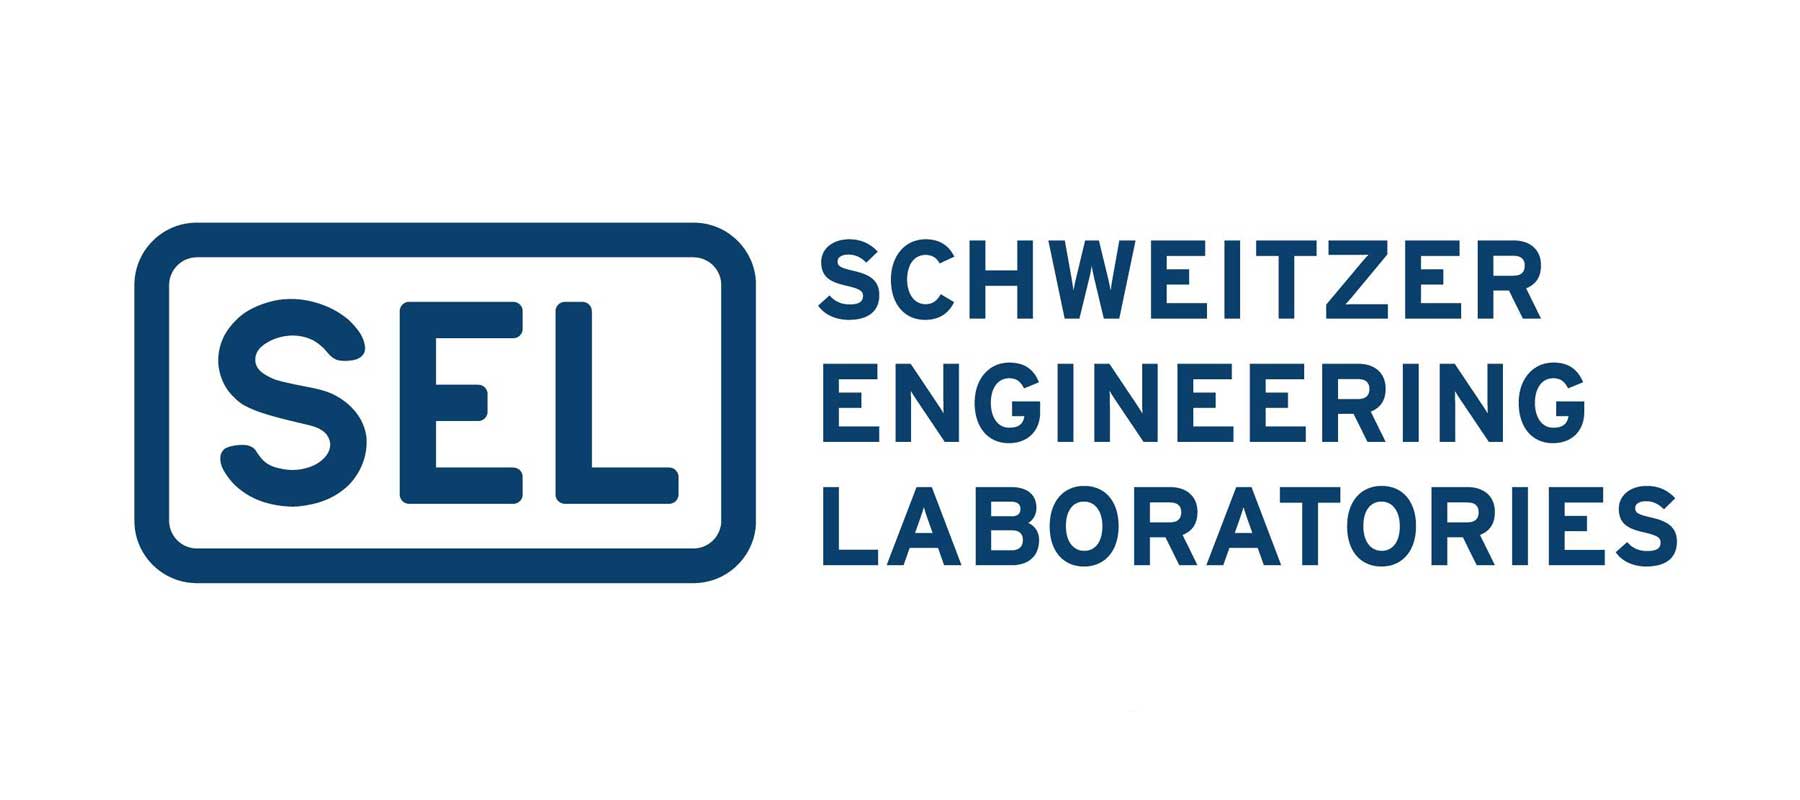 schweitzer engineering laboratories